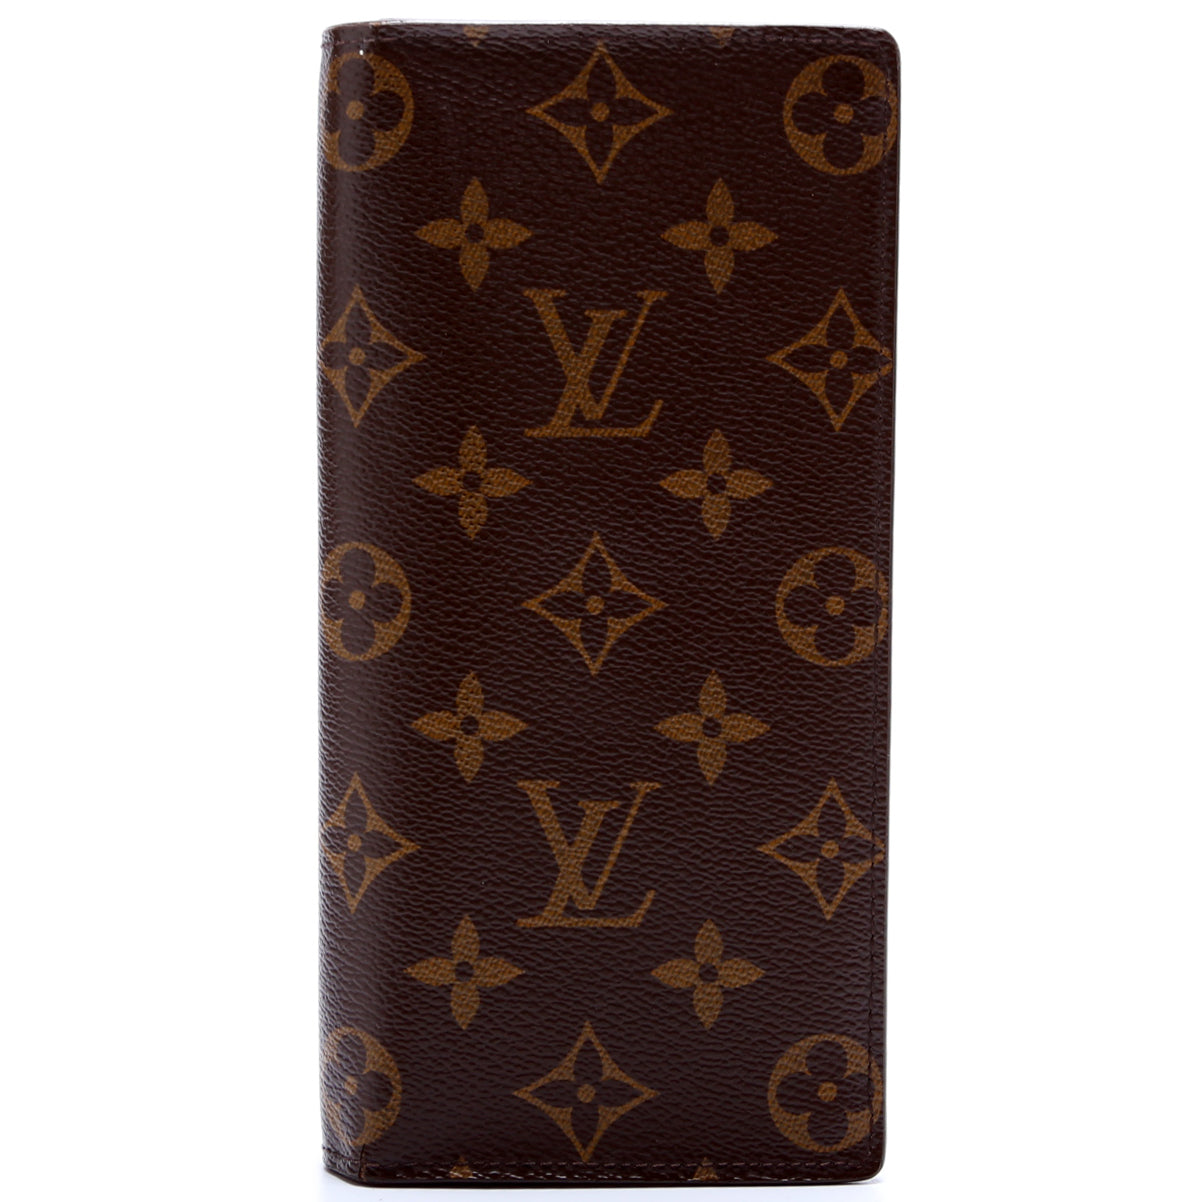 Authentic Louis Vuitton Brazza wallet